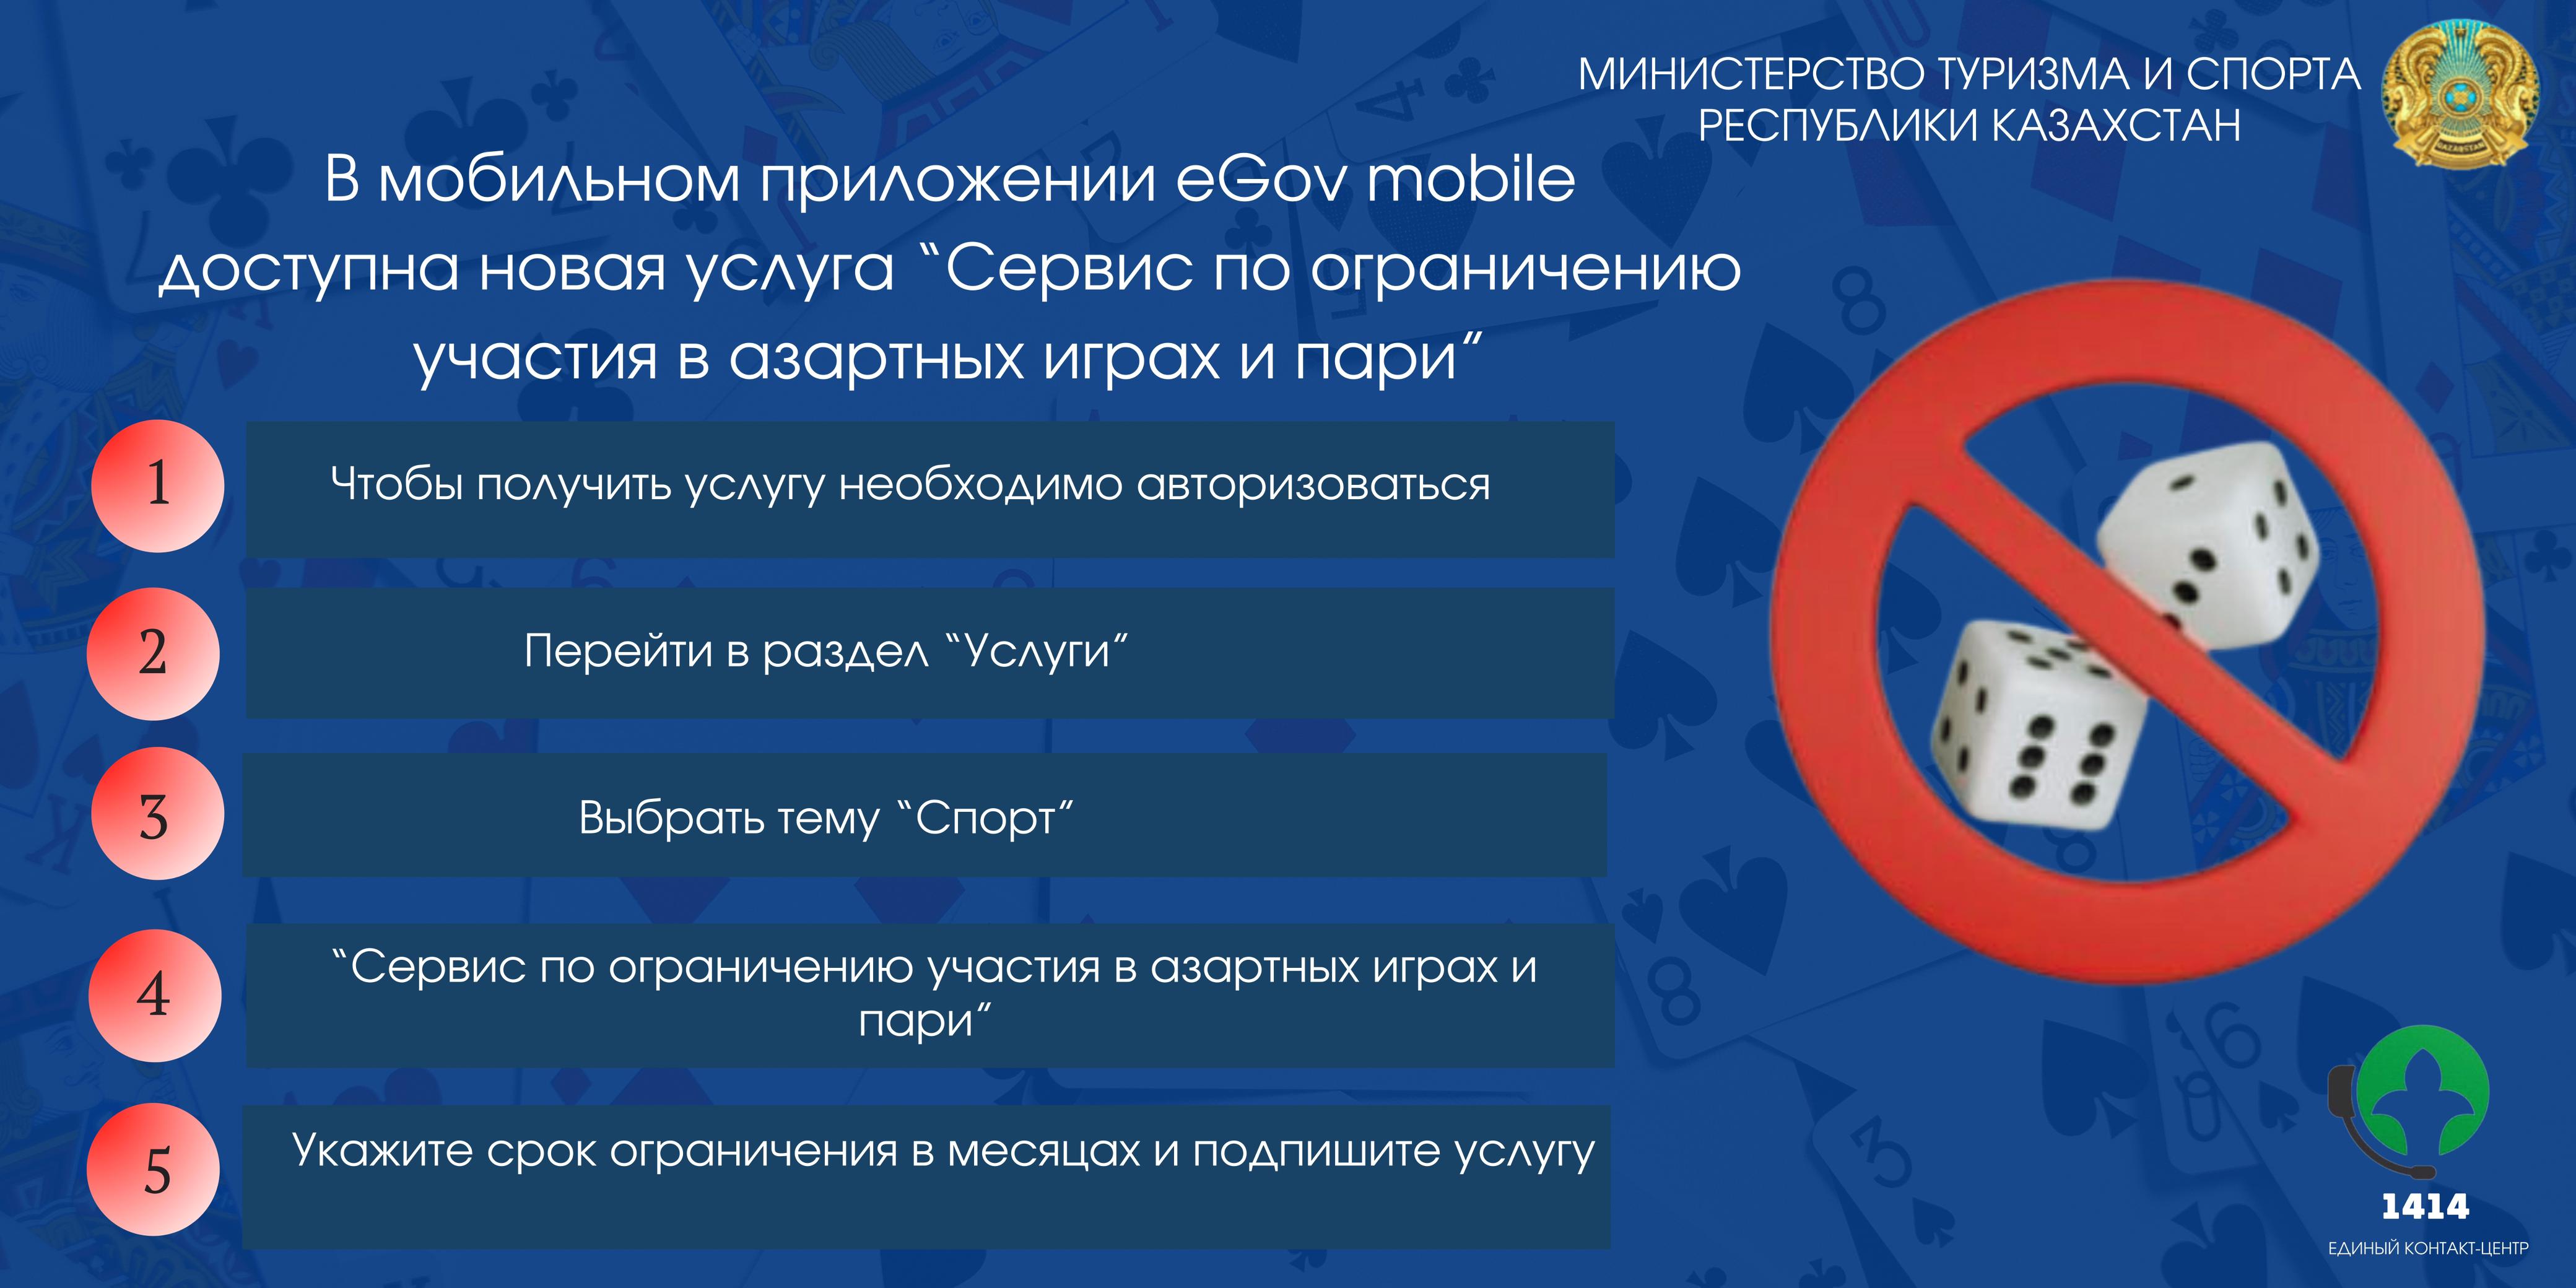 Добровольное ограничение участия в азартных играх и пари, в онлайн формате через мобильное приложение «eGov mobile»